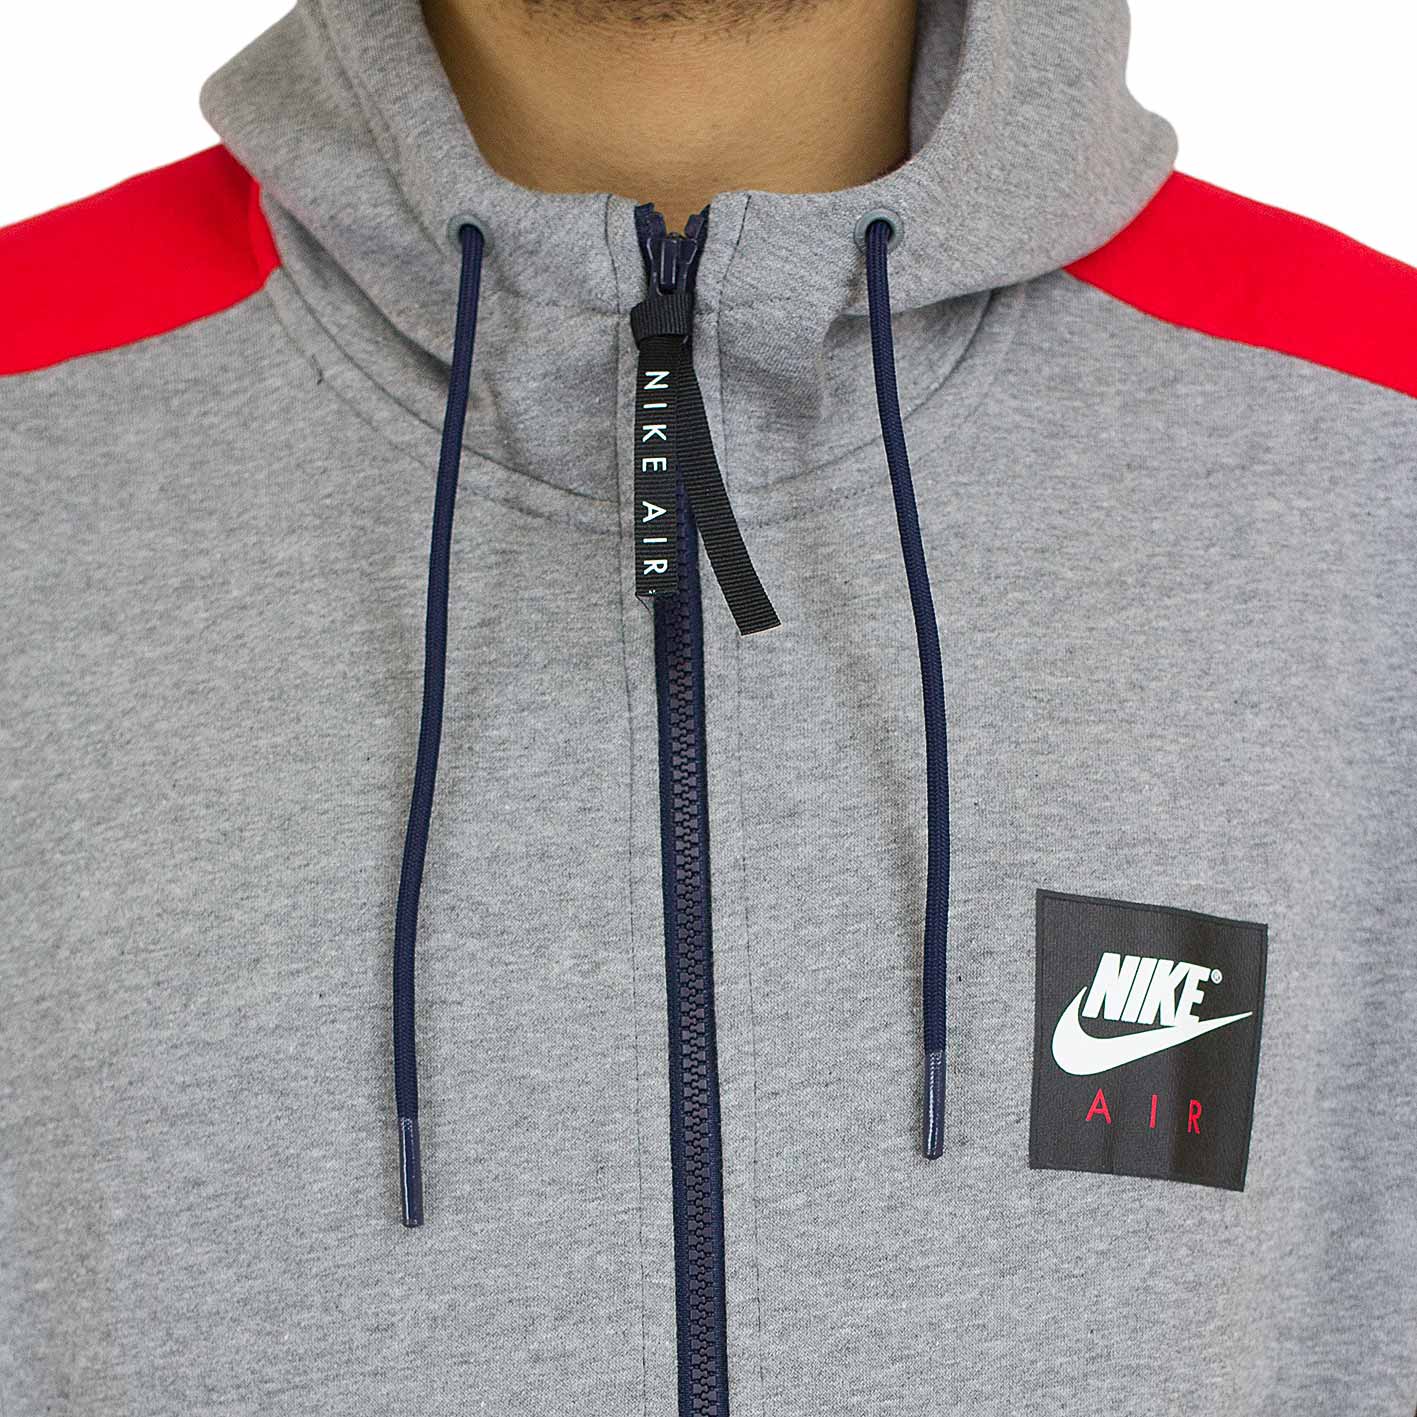 ☆ Nike Zip-Hoody Air Fleece grau/rot - hier bestellen!